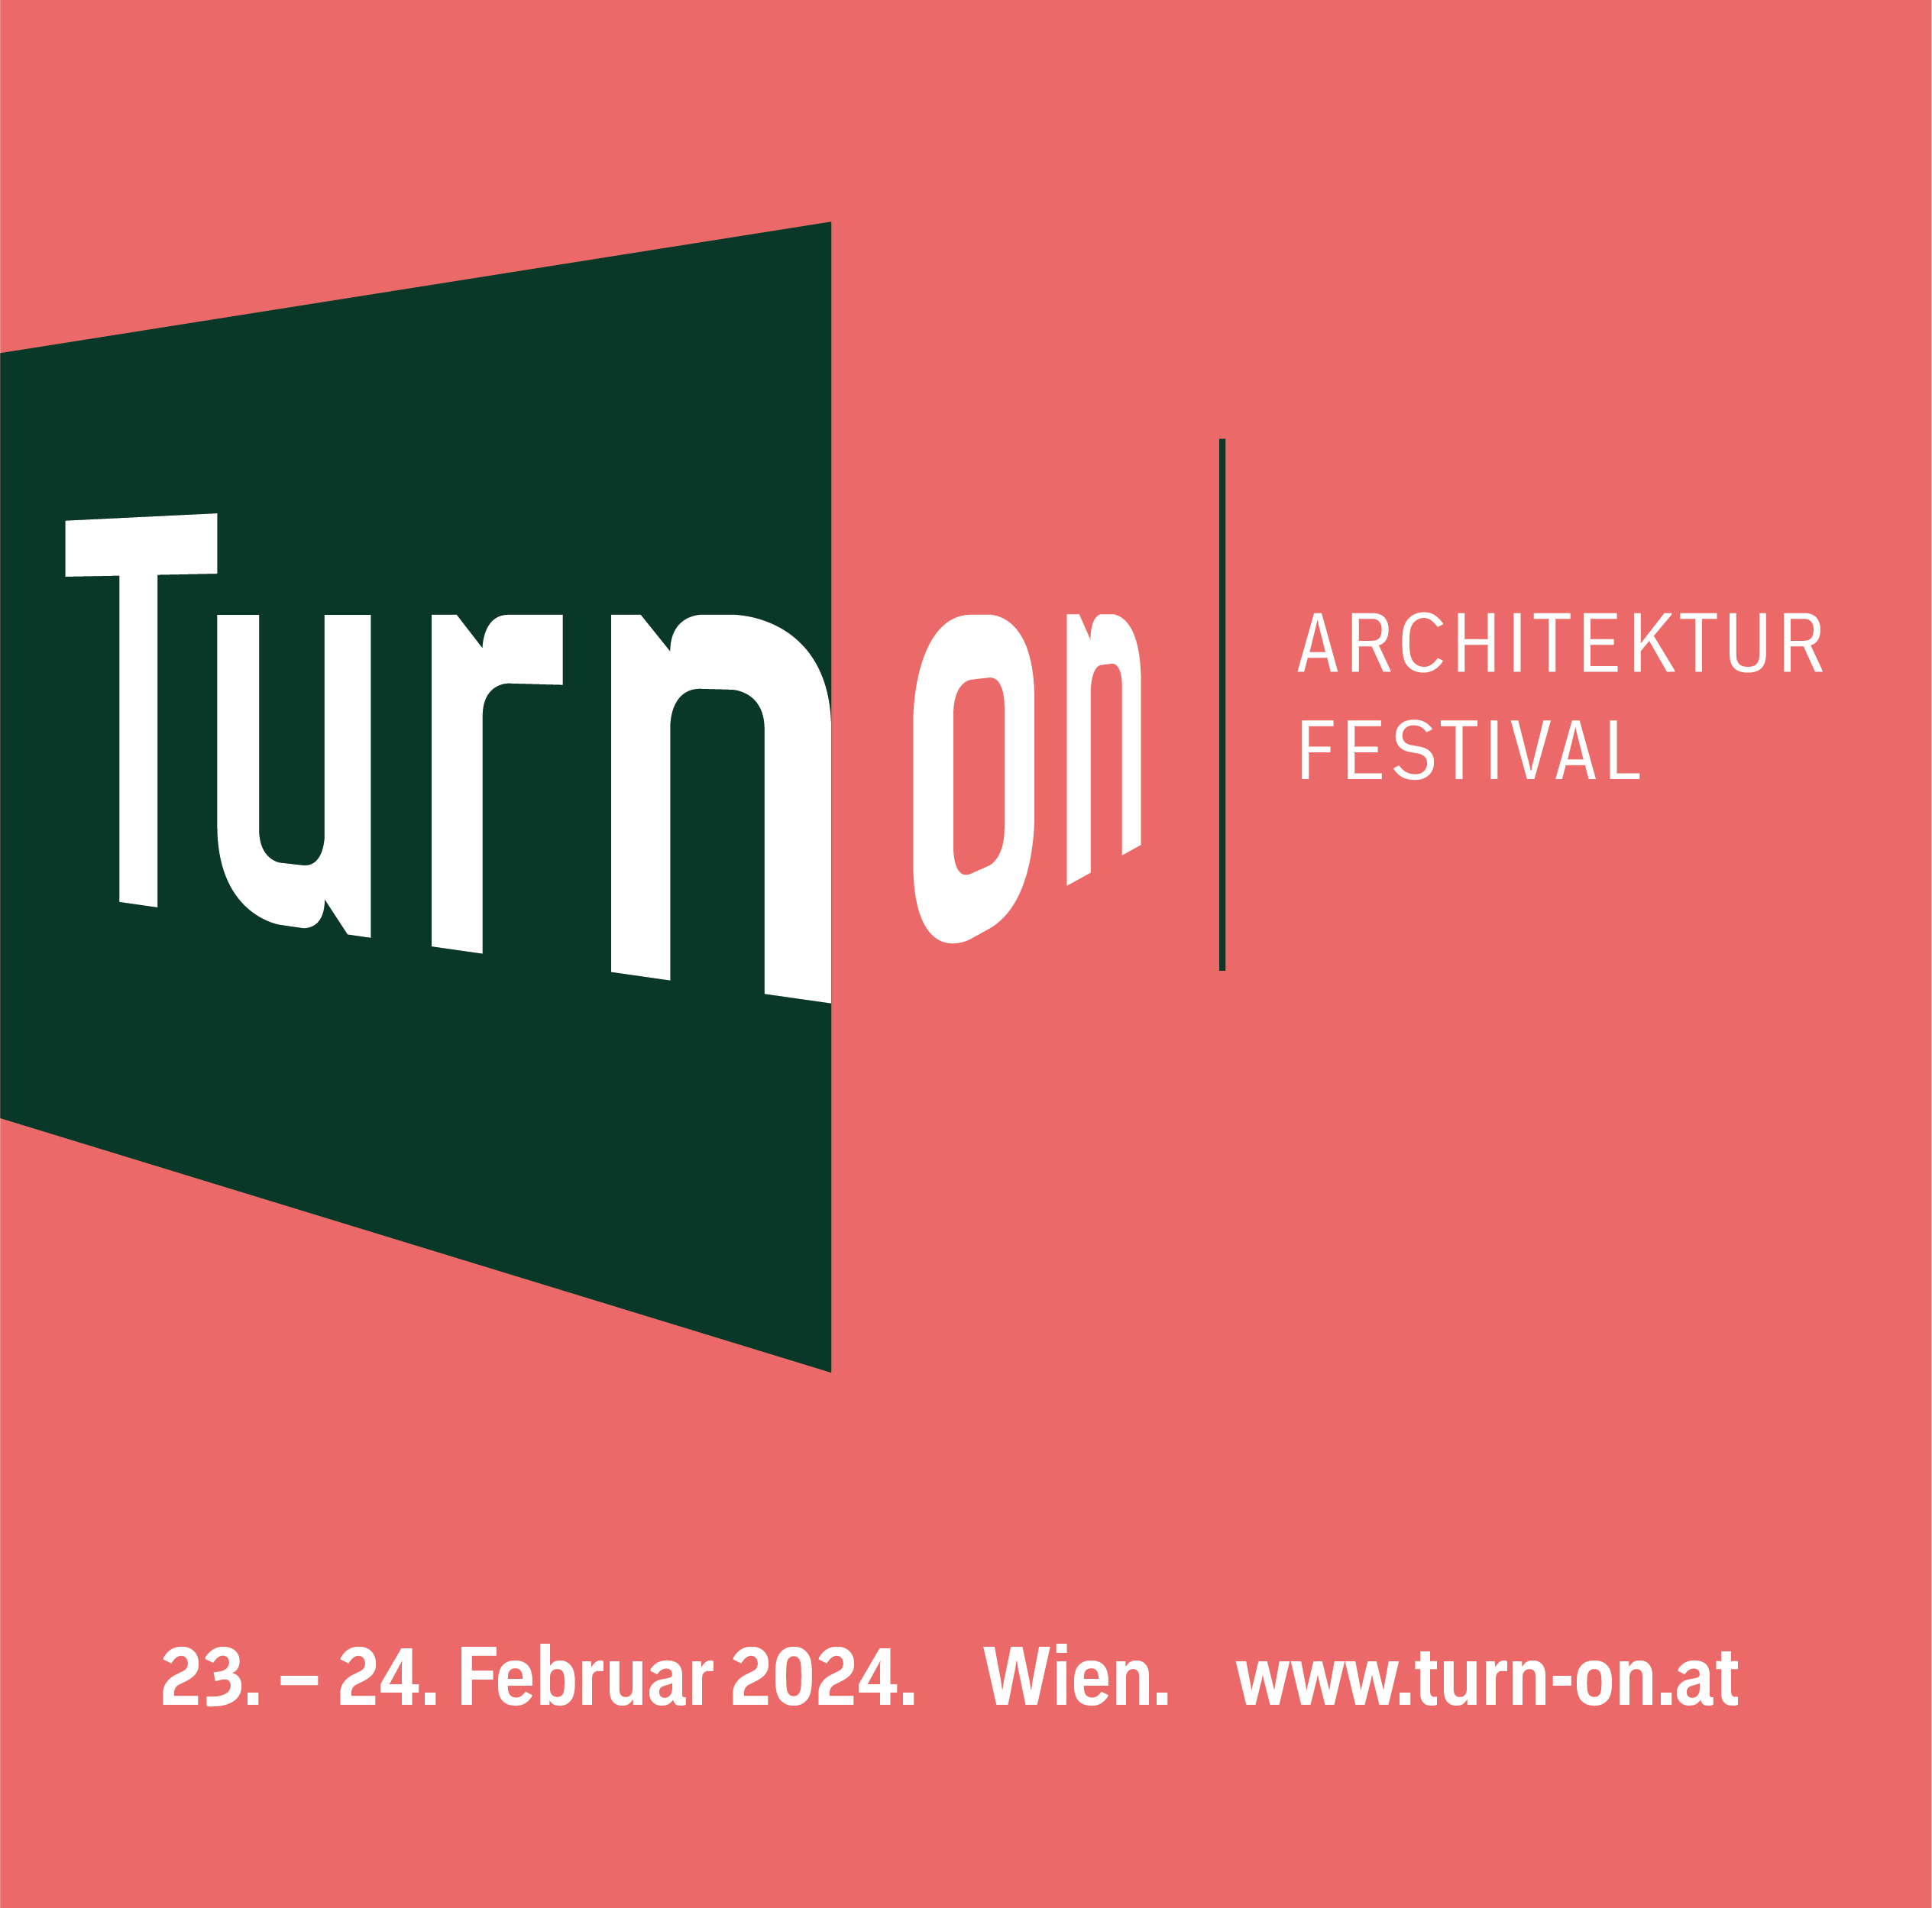 Architekturfestival TURN ON vom 23. bis 24. Februar im MuTh in Wien!